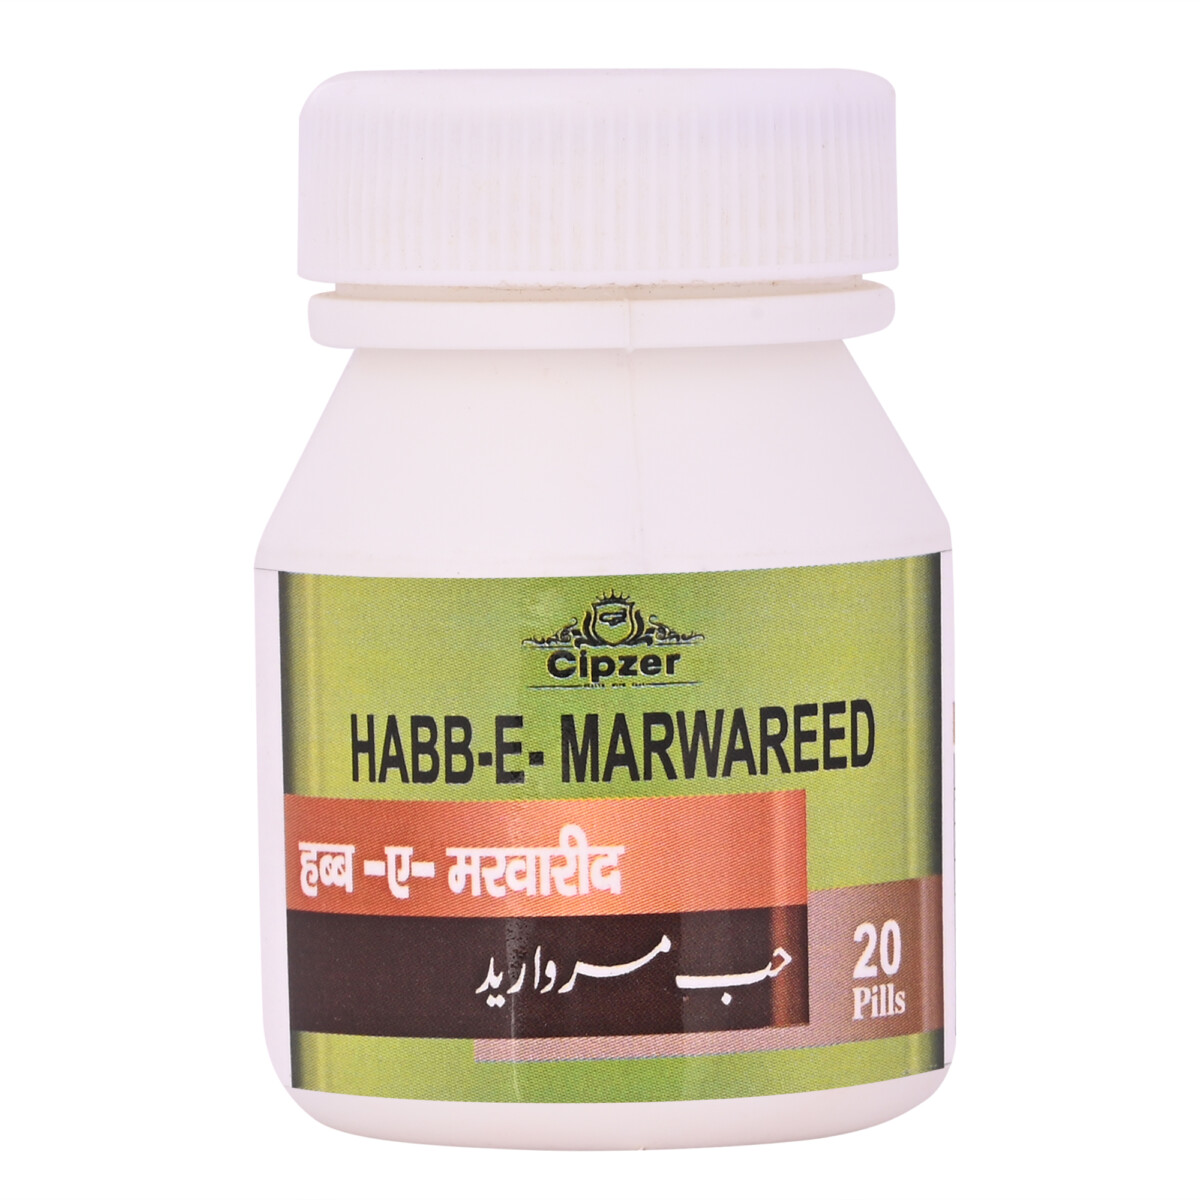 Cipzer Habb-e-marwareed